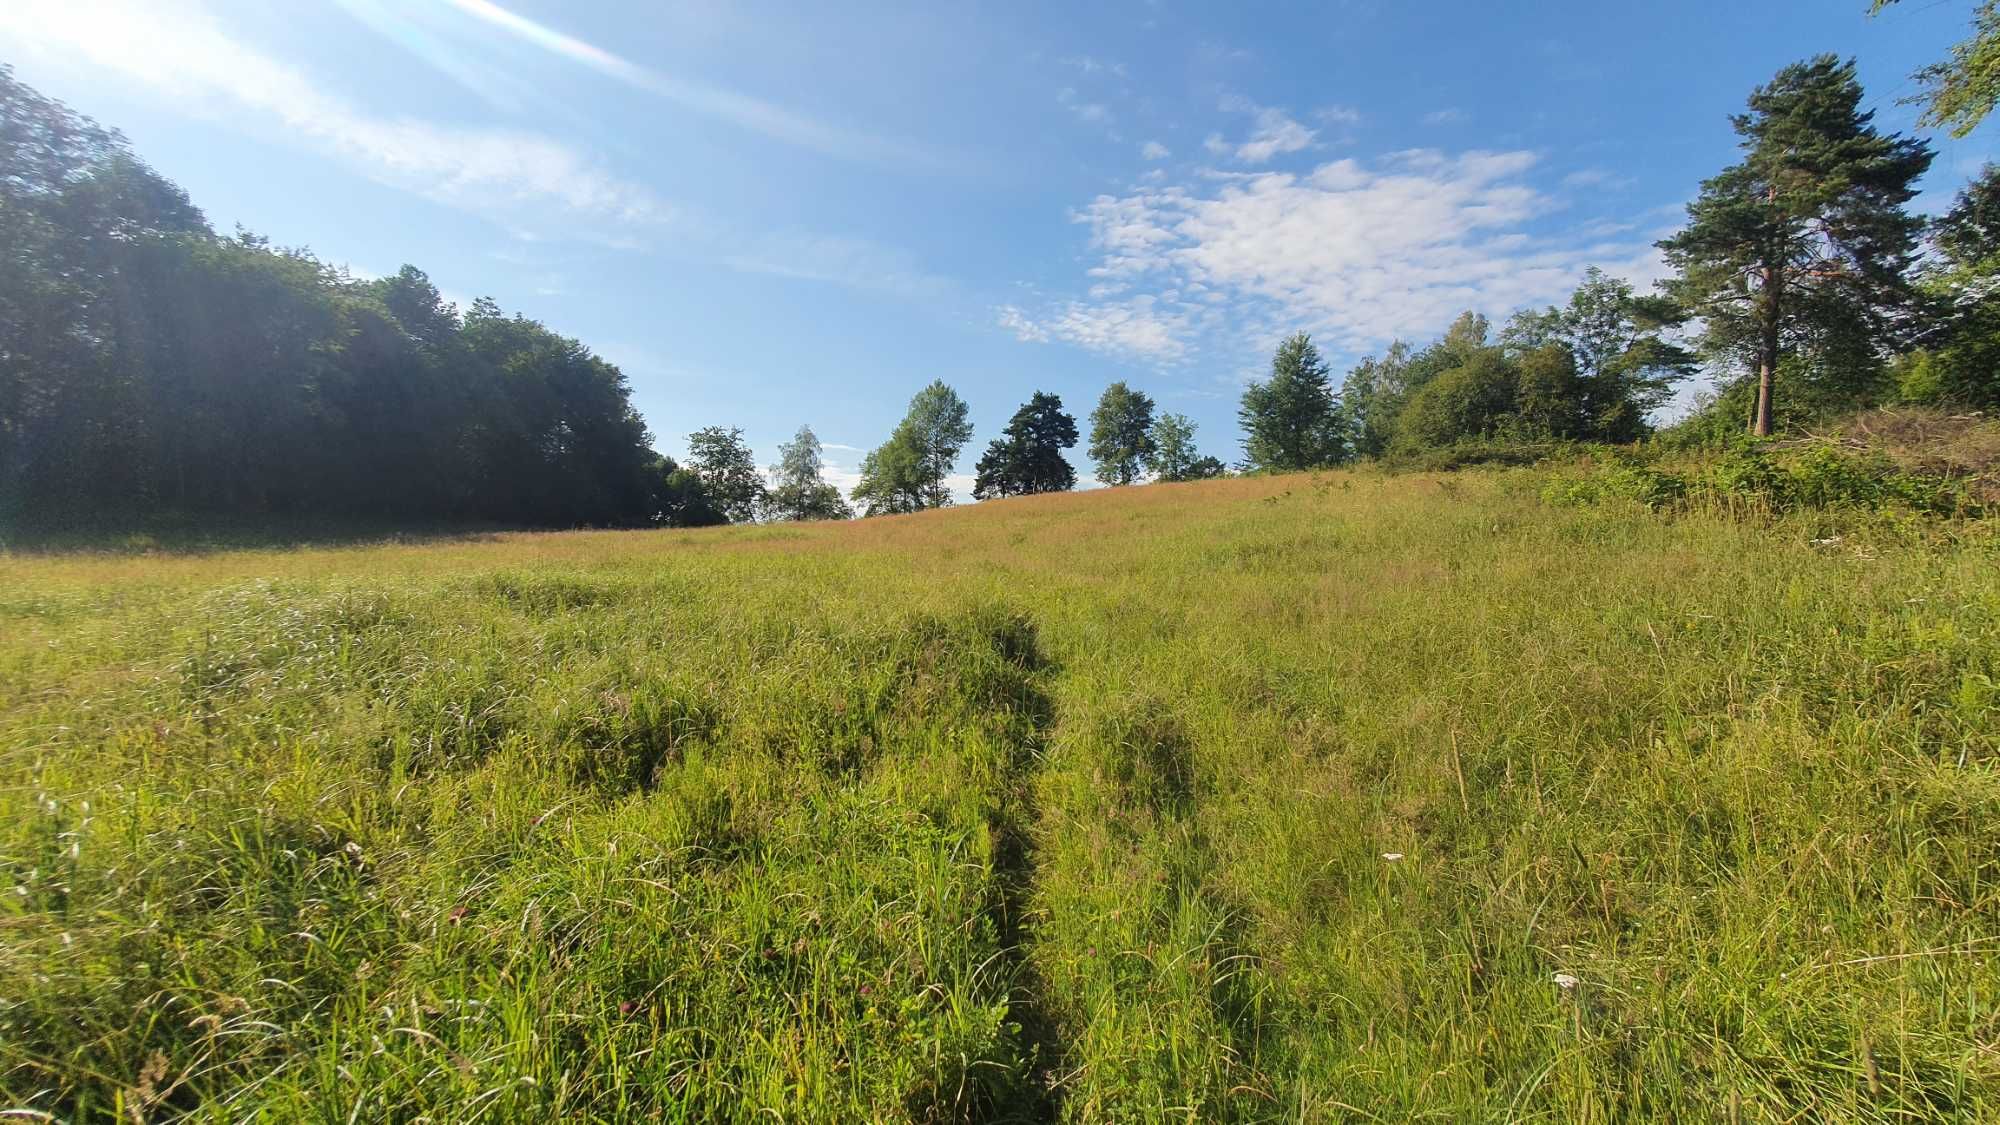 Działka Rolno Rekreacyjna BIESZCZADY okolice Ustrzyki Dolne 1 Hektar